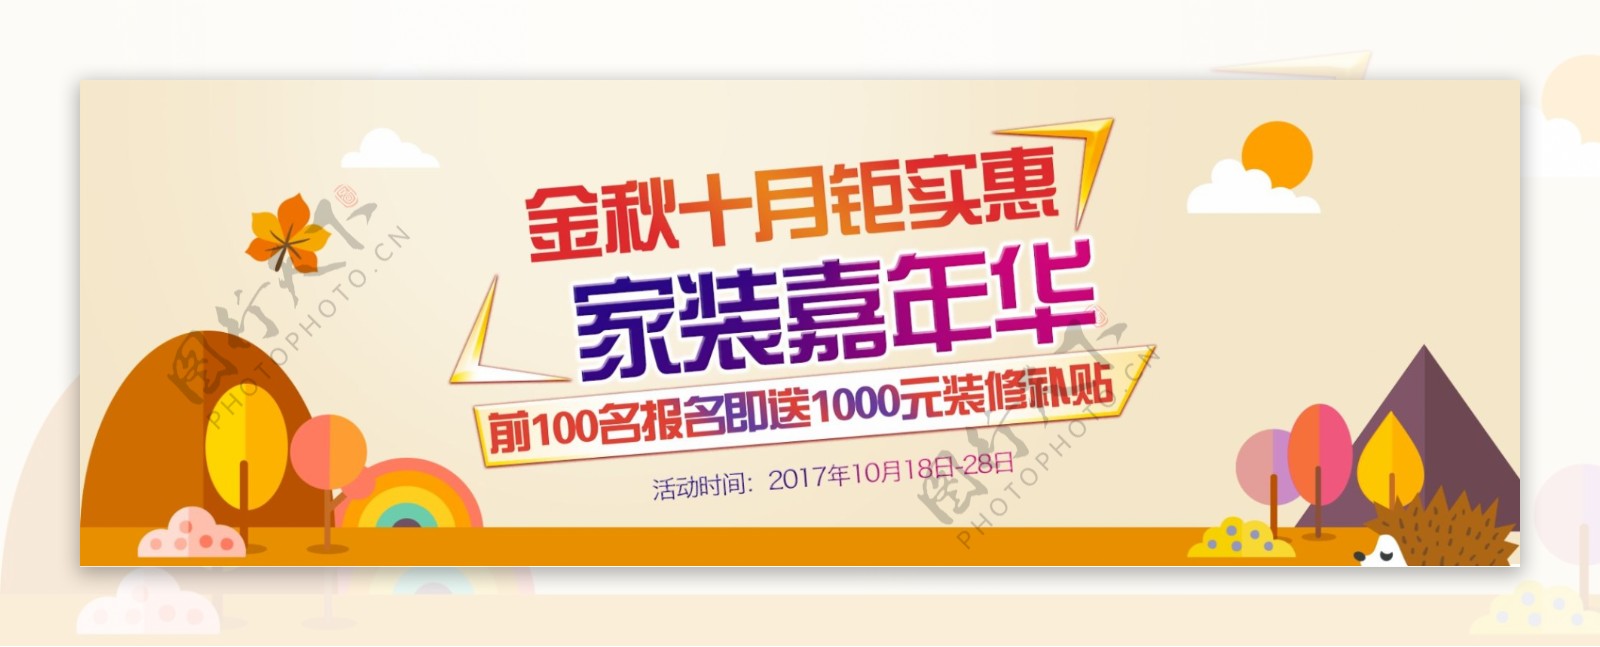 淘宝天猫电商家装嘉年华金秋十月促销海报banner模板设计秋家居